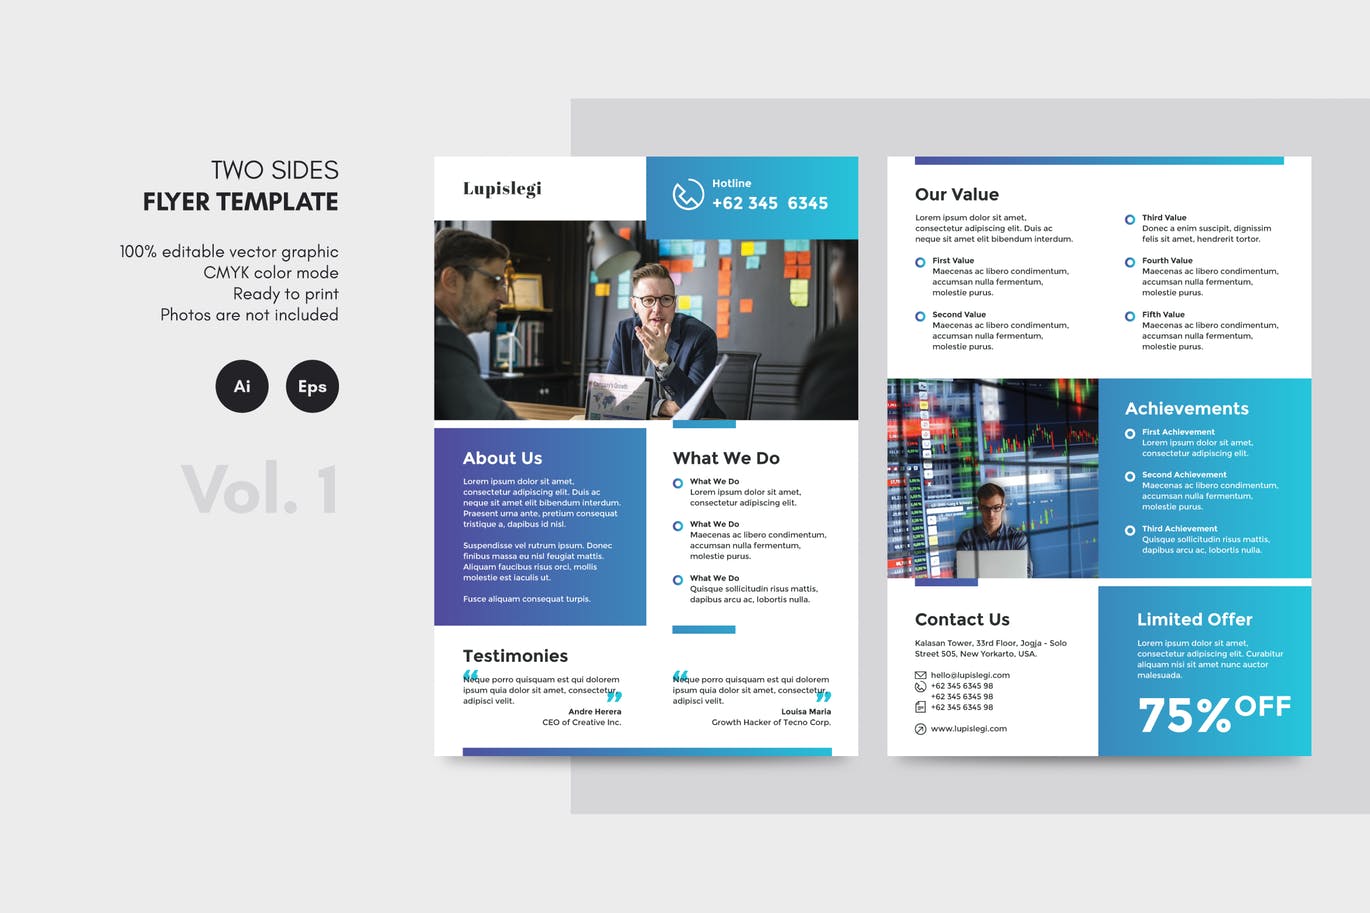 双面印刷排版信息科技公司宣传单设计模板v1 Two Sides Flyer Template V. 1插图